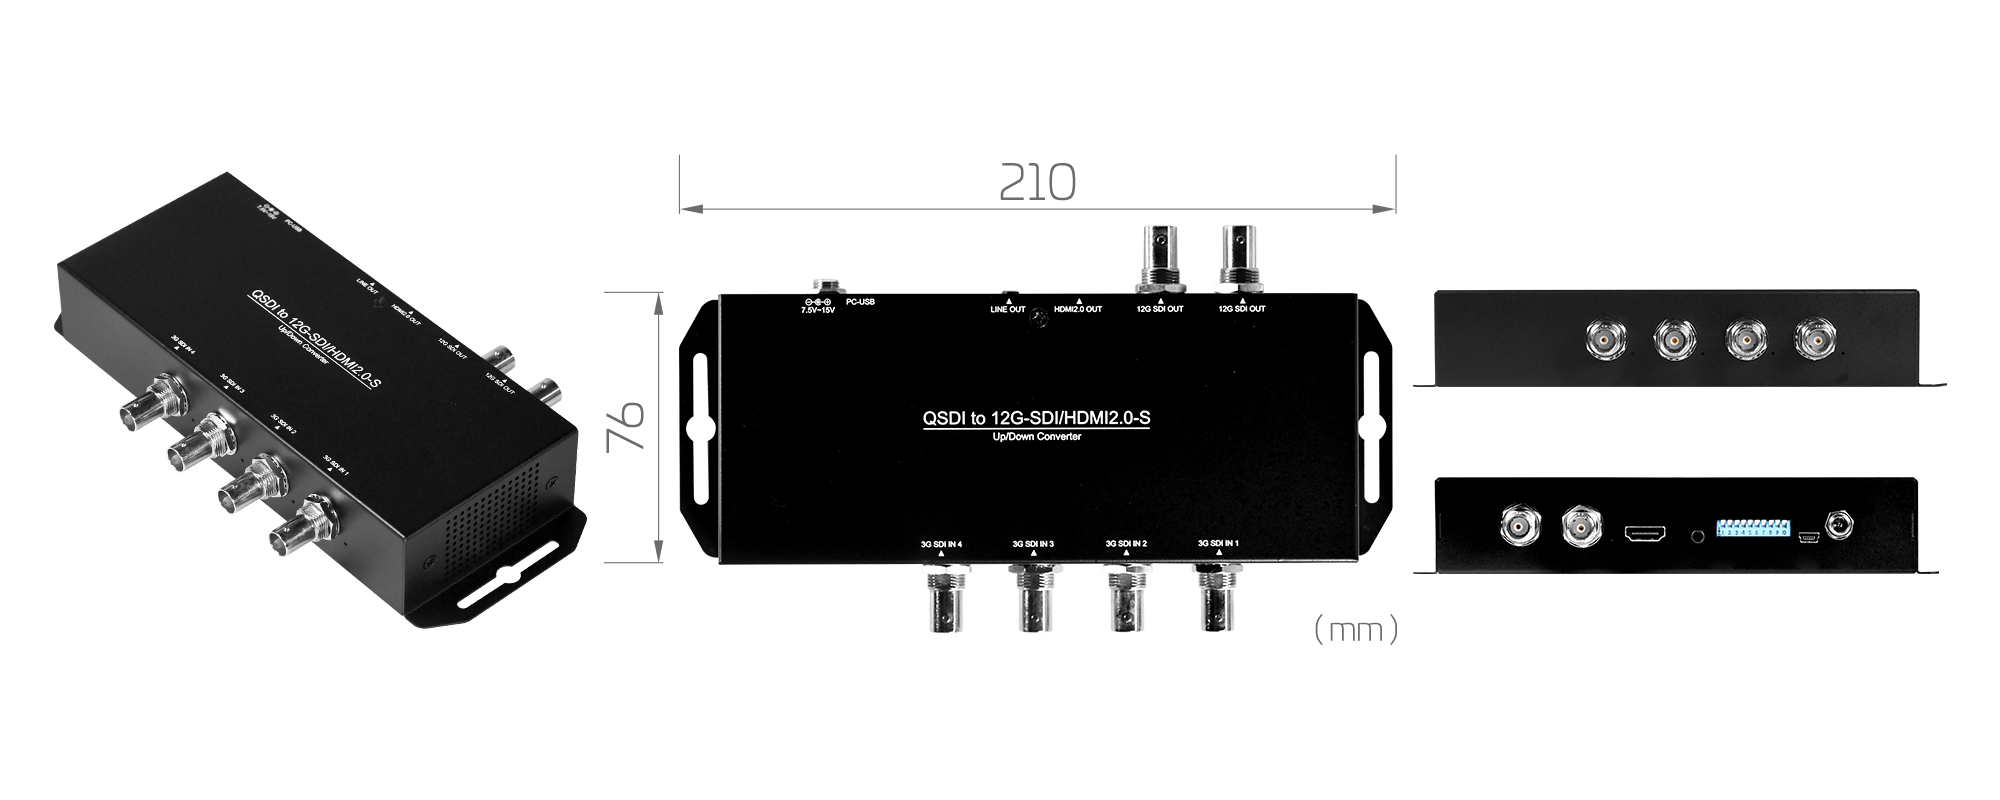 QSDI to 12G-SDI/HDMI2.0-S